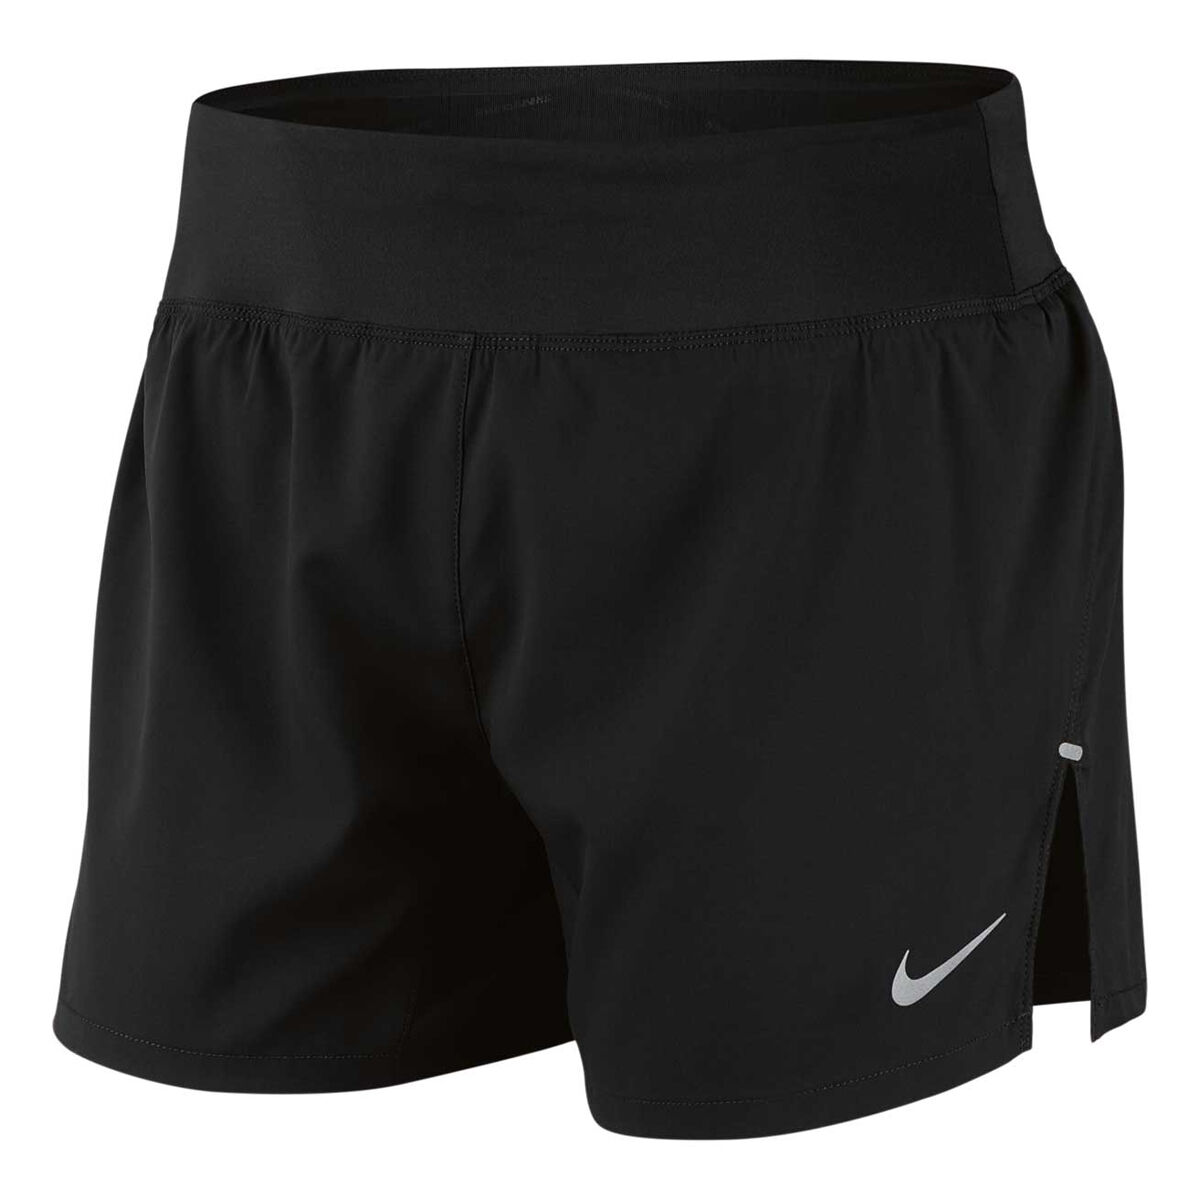 5 inch running shorts